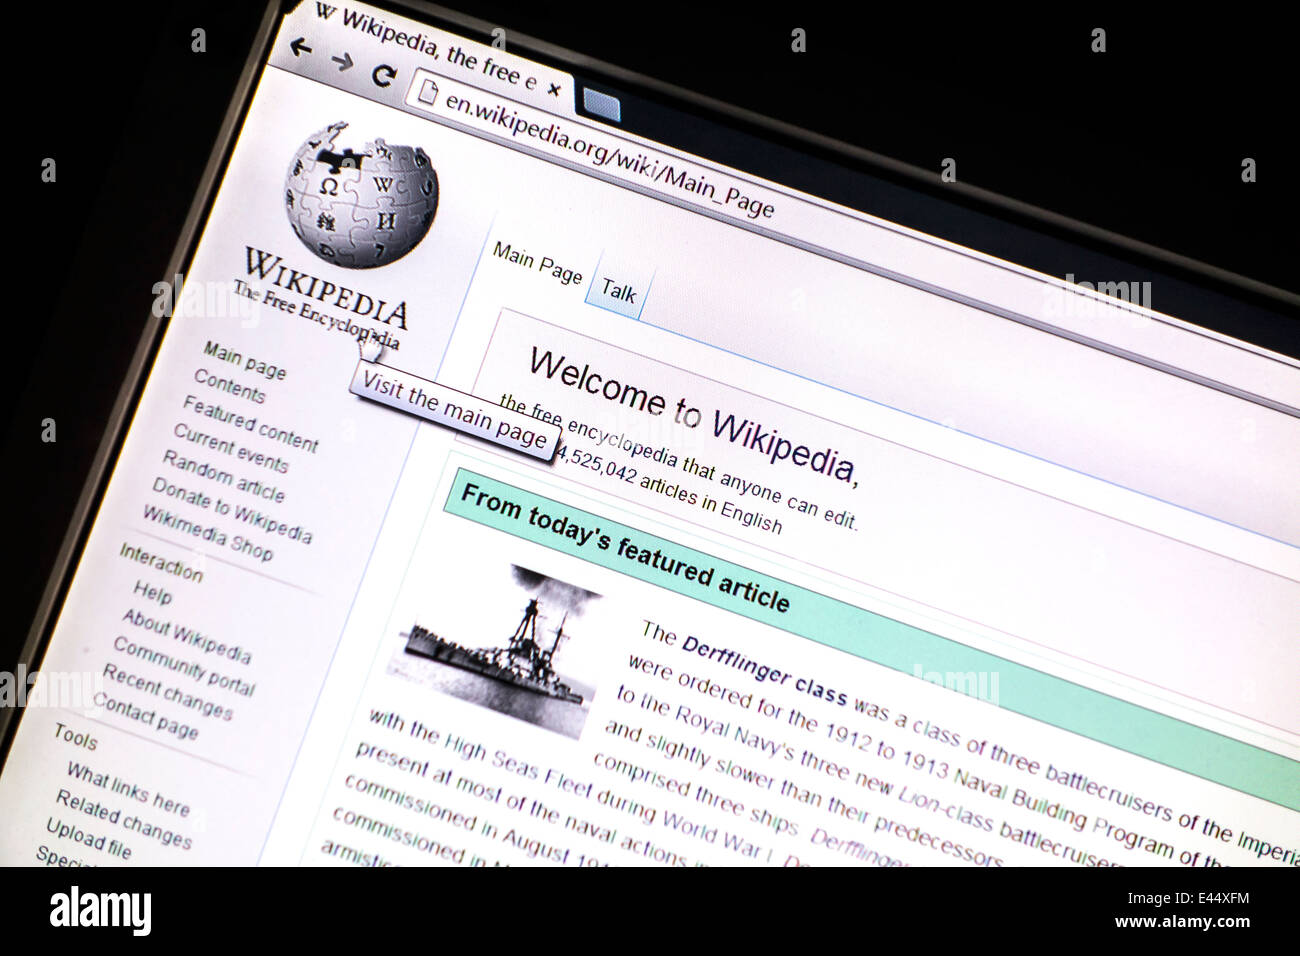 Wikipedia-Website Anzeige auf Bildschirm. Wikipedia ist eine freie Internetenzyklopädie. Stockfoto